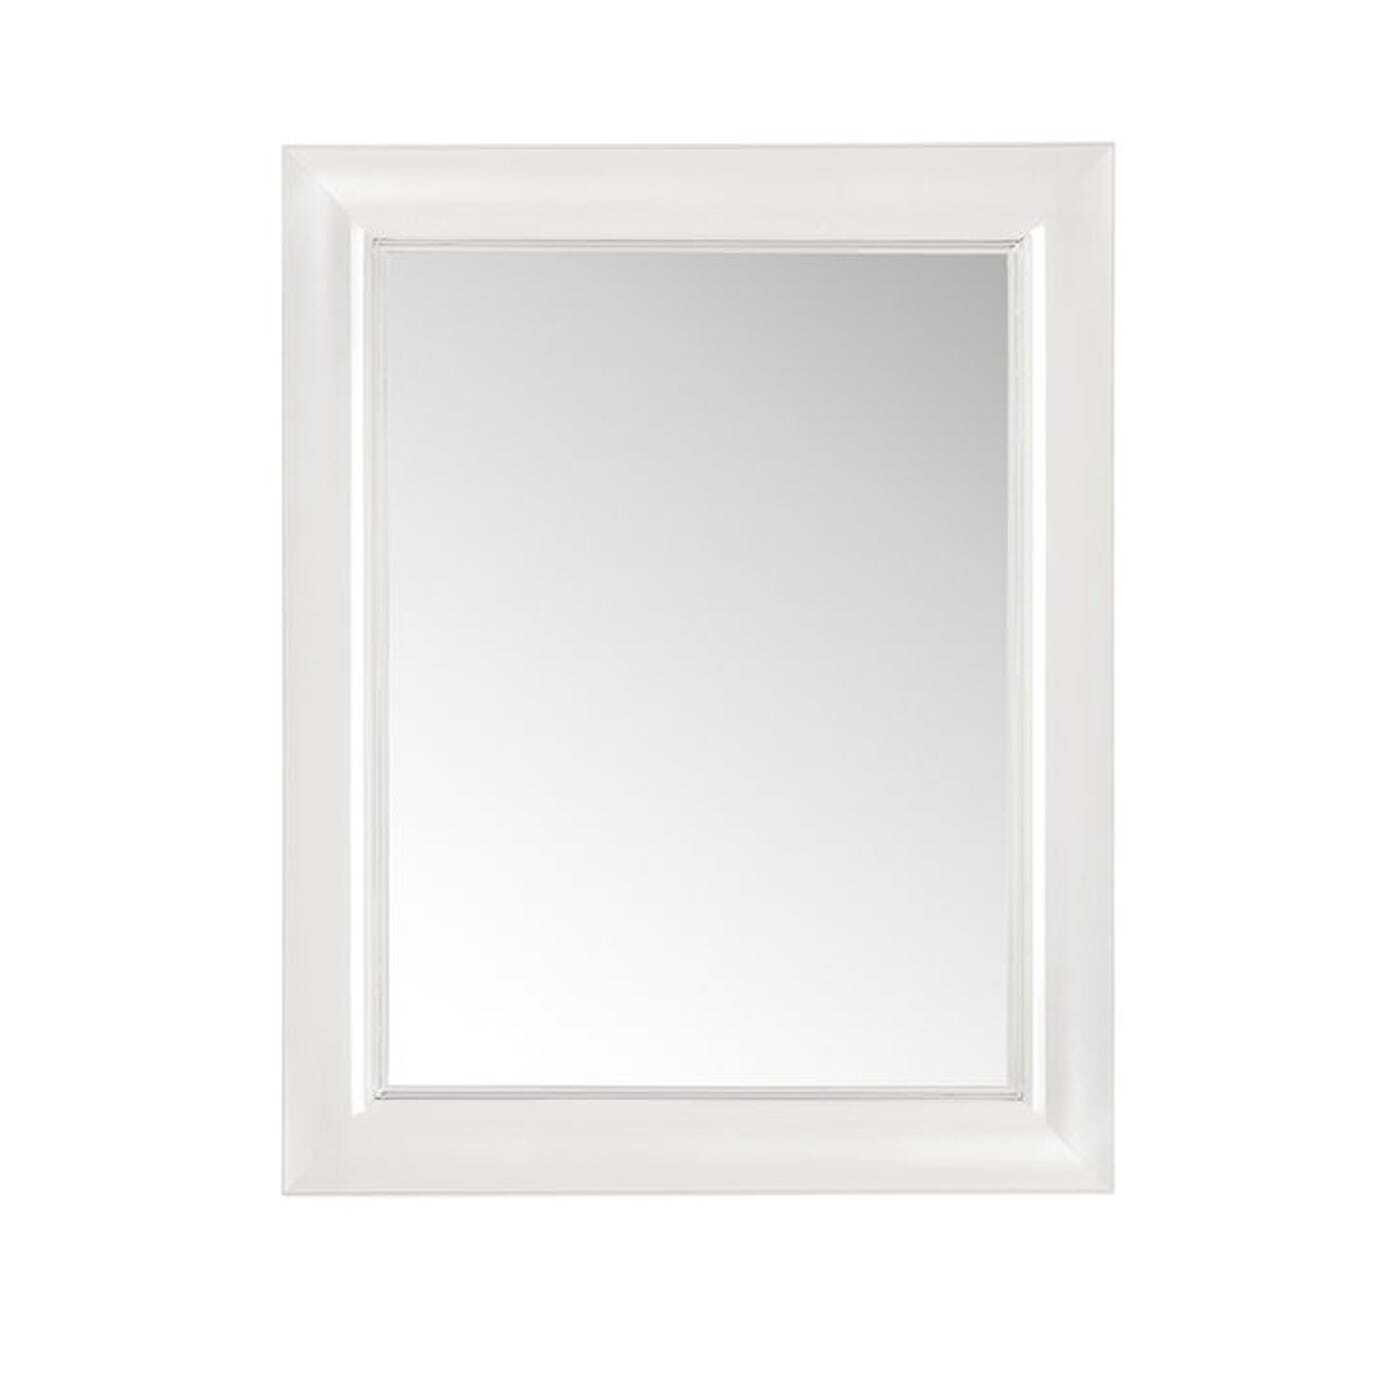 Kartell Francois Ghost Small Rectangular White Mirror